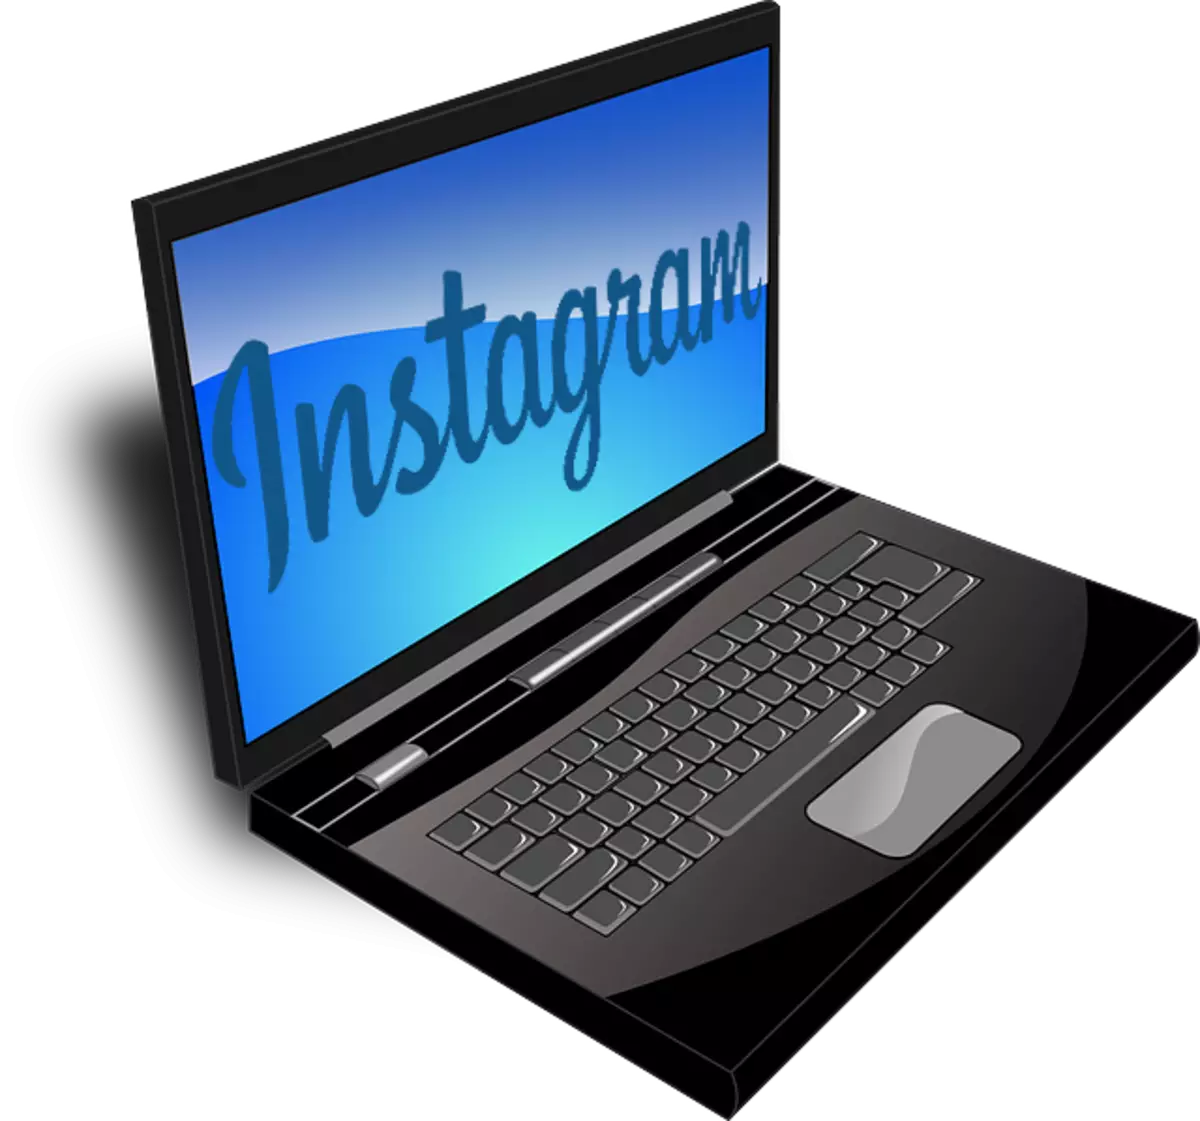 Como publicar unha foto en Instagram desde unha computadora